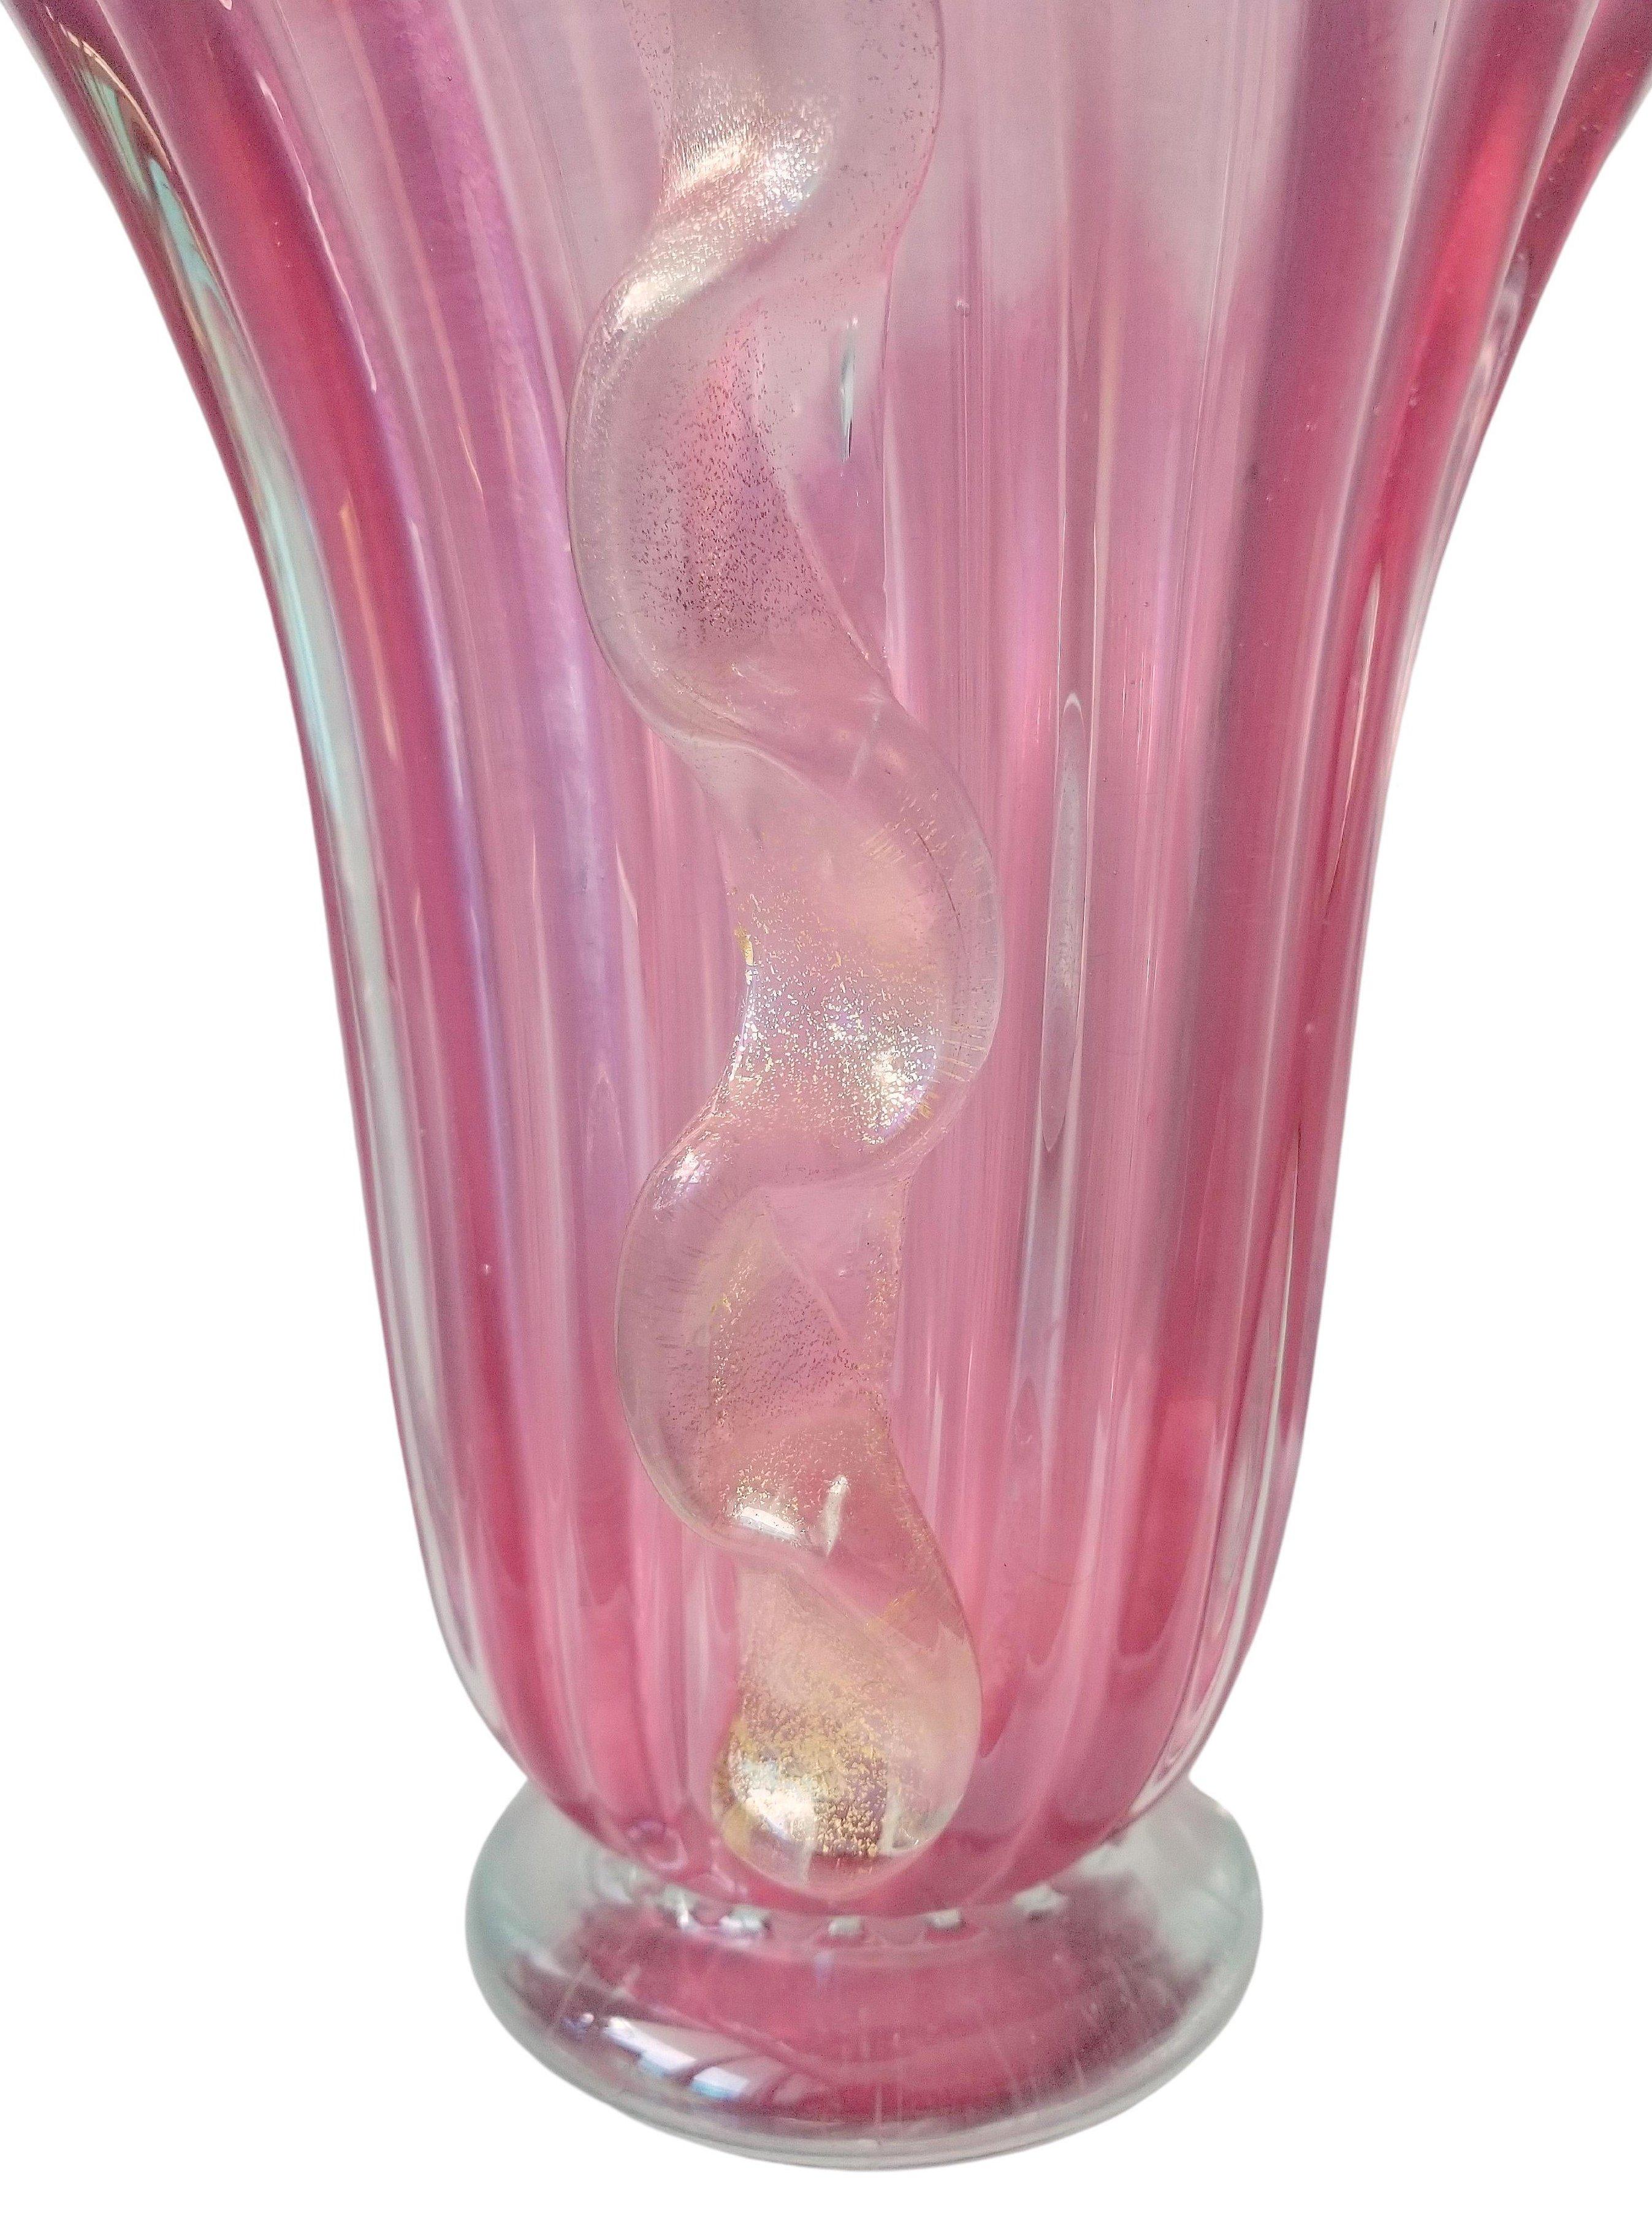 Grand vase rose transparent en verre de Murano fait à la main. Le récipient vintage est enrichi par des applications latérales de verre façonné avec un motif ondulé caractéristique de Morise avec de l'aventurine dorée. Le corps nervuré en forme de